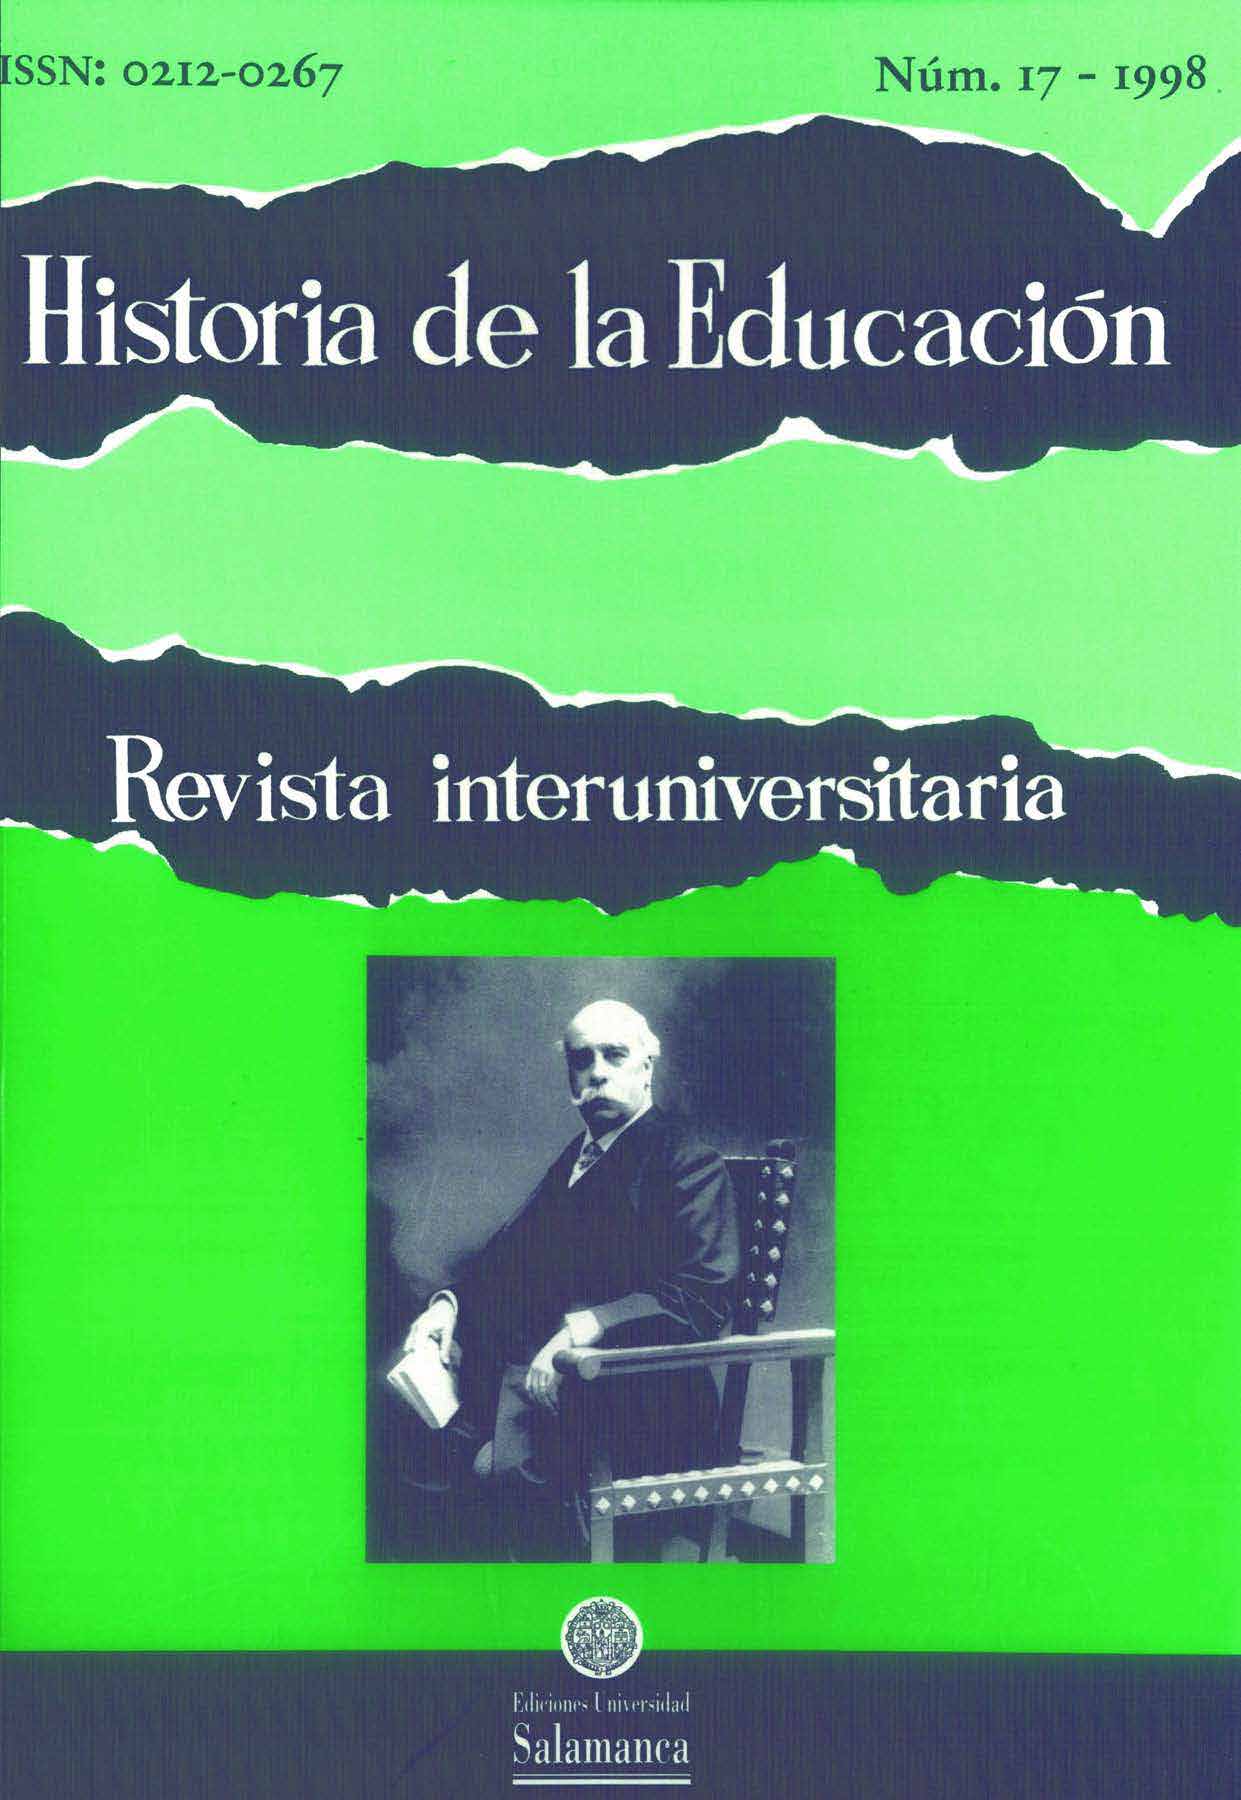                         Ver Vol. 17 (1998): Historia de la educación secundaria
                    